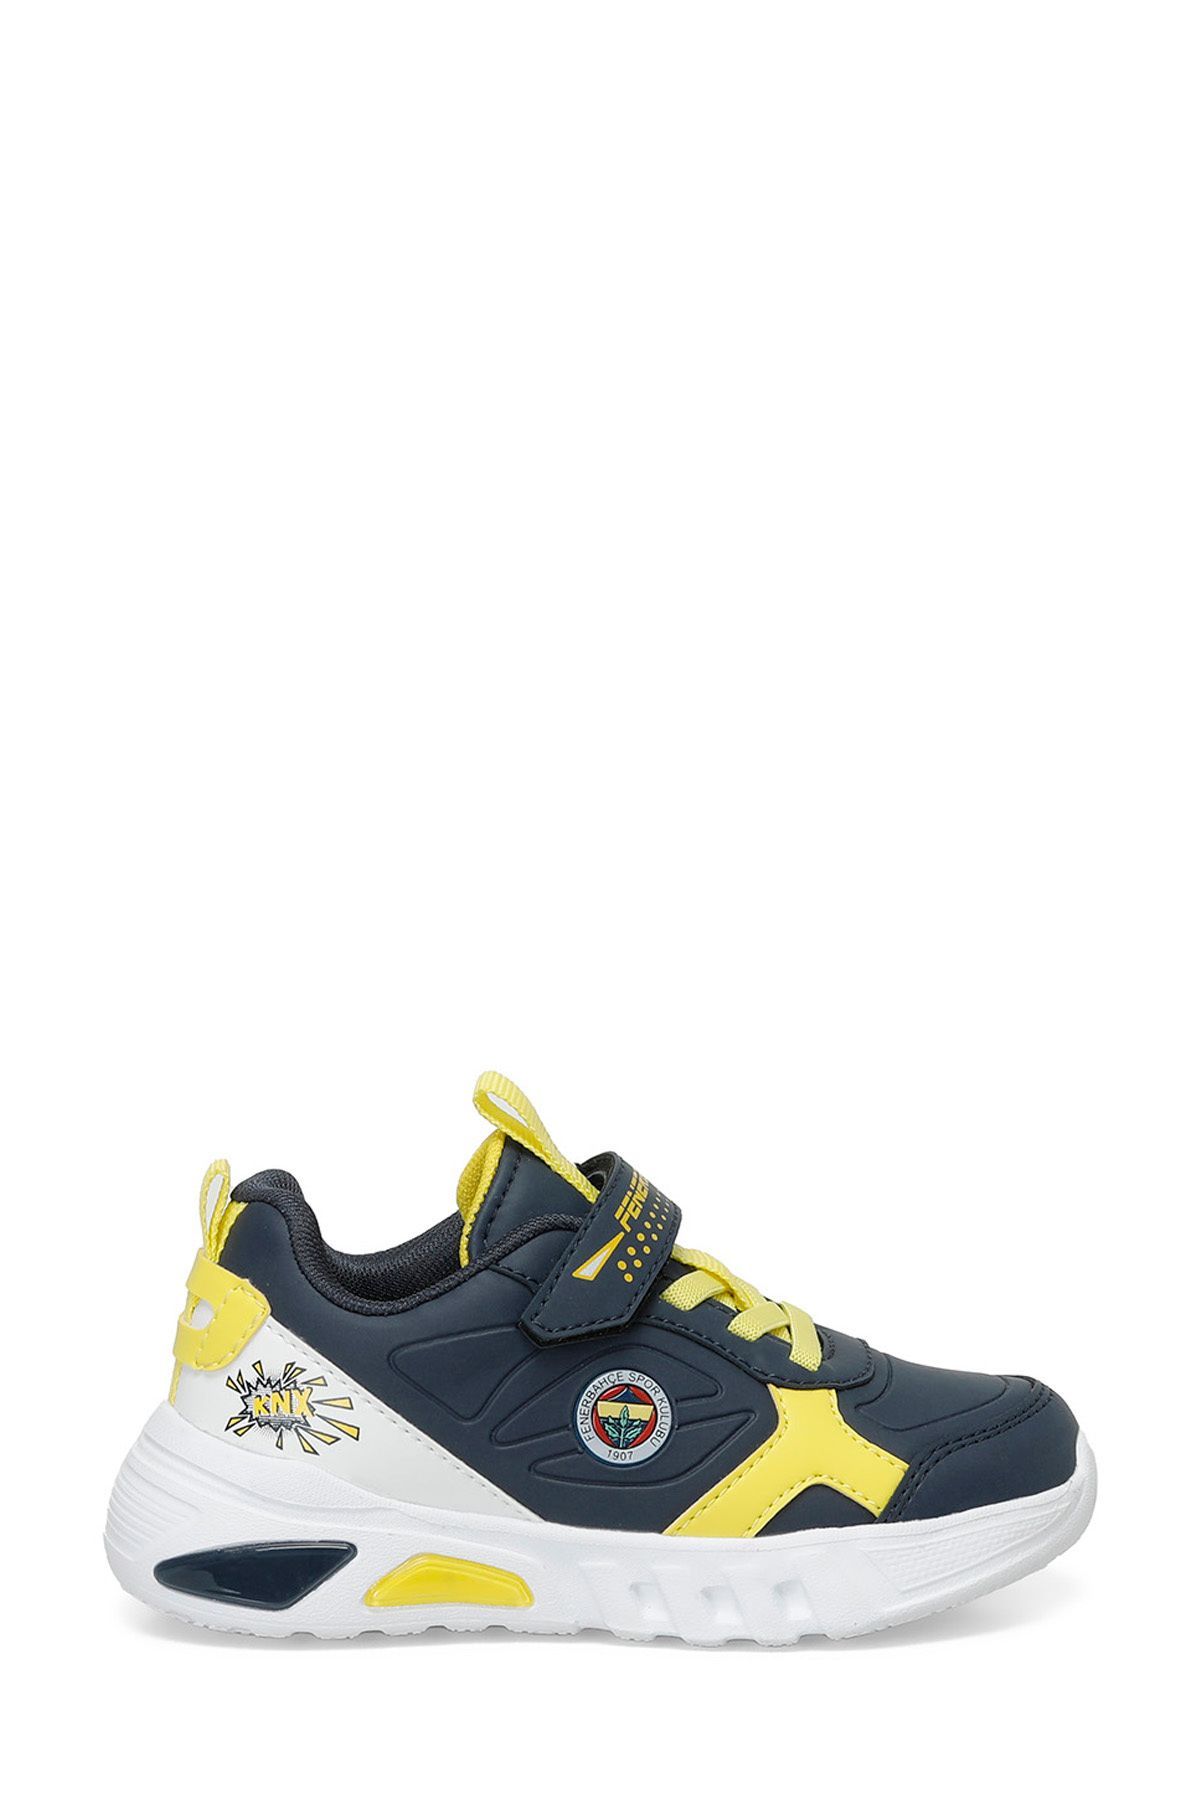 Fenerbahçe MAGS  4FX Lacivert Erkek Çocuk Spor Ayakkabı